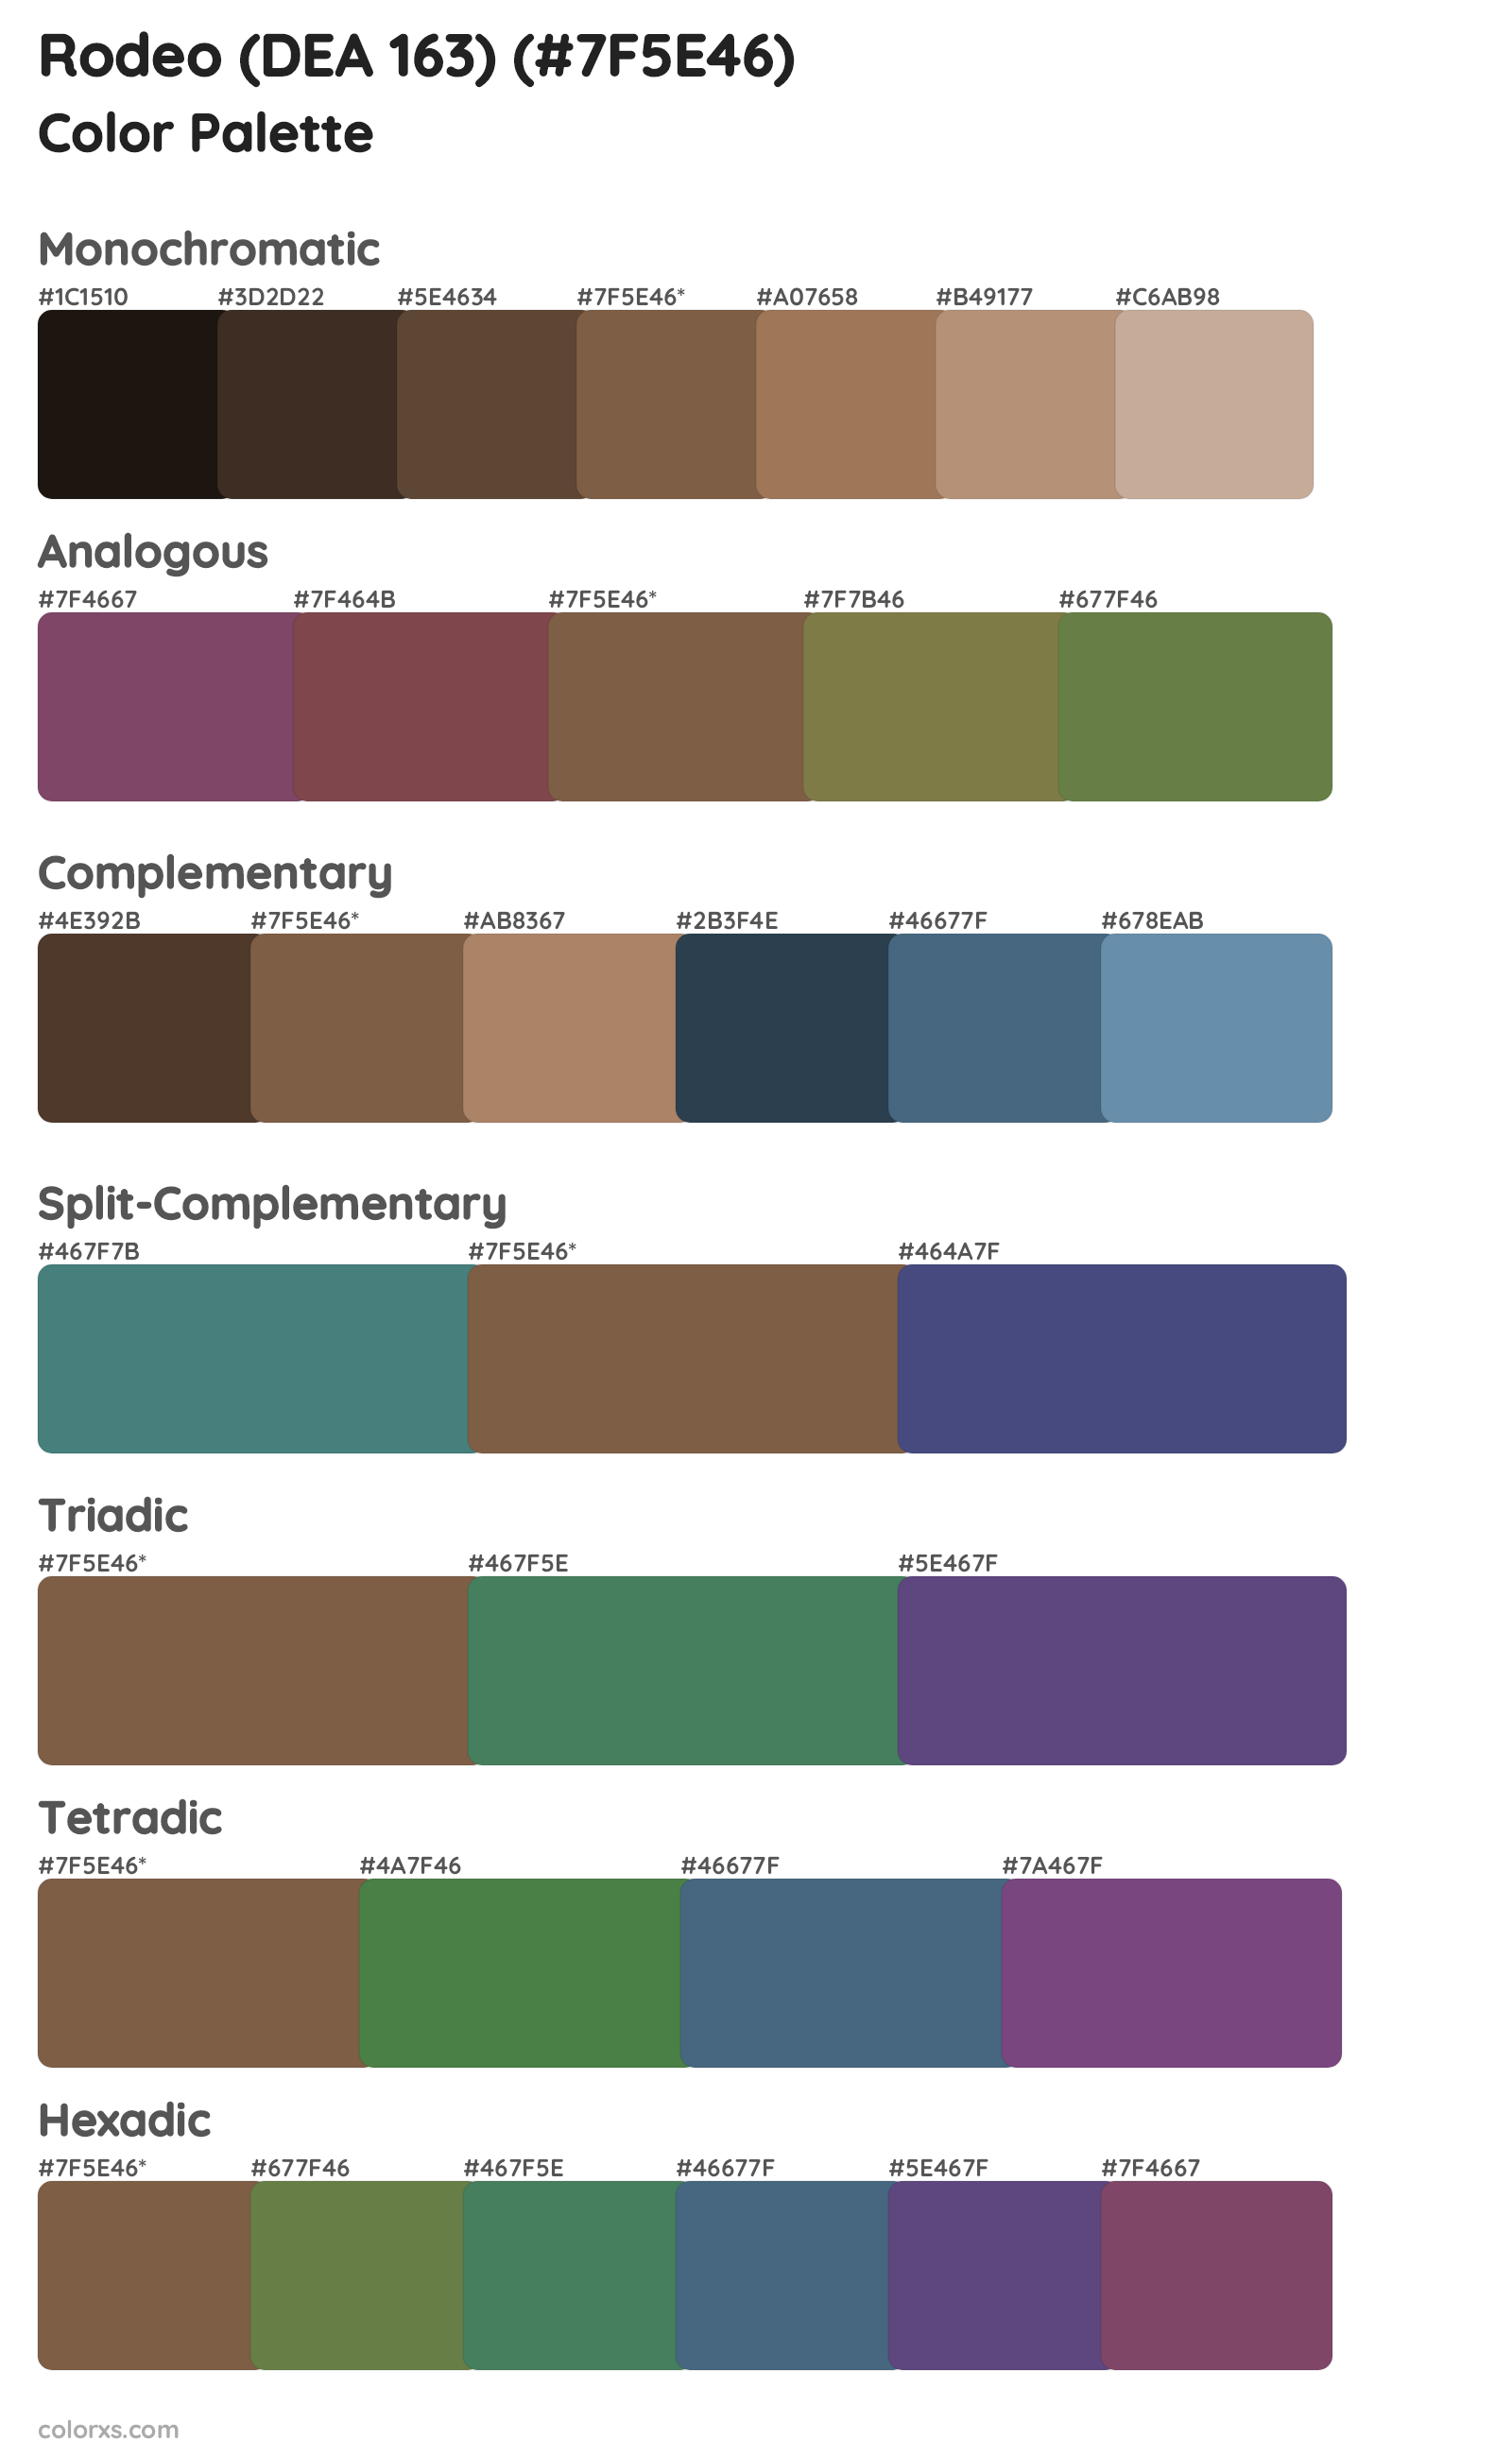 Rodeo (DEA 163) Color Scheme Palettes